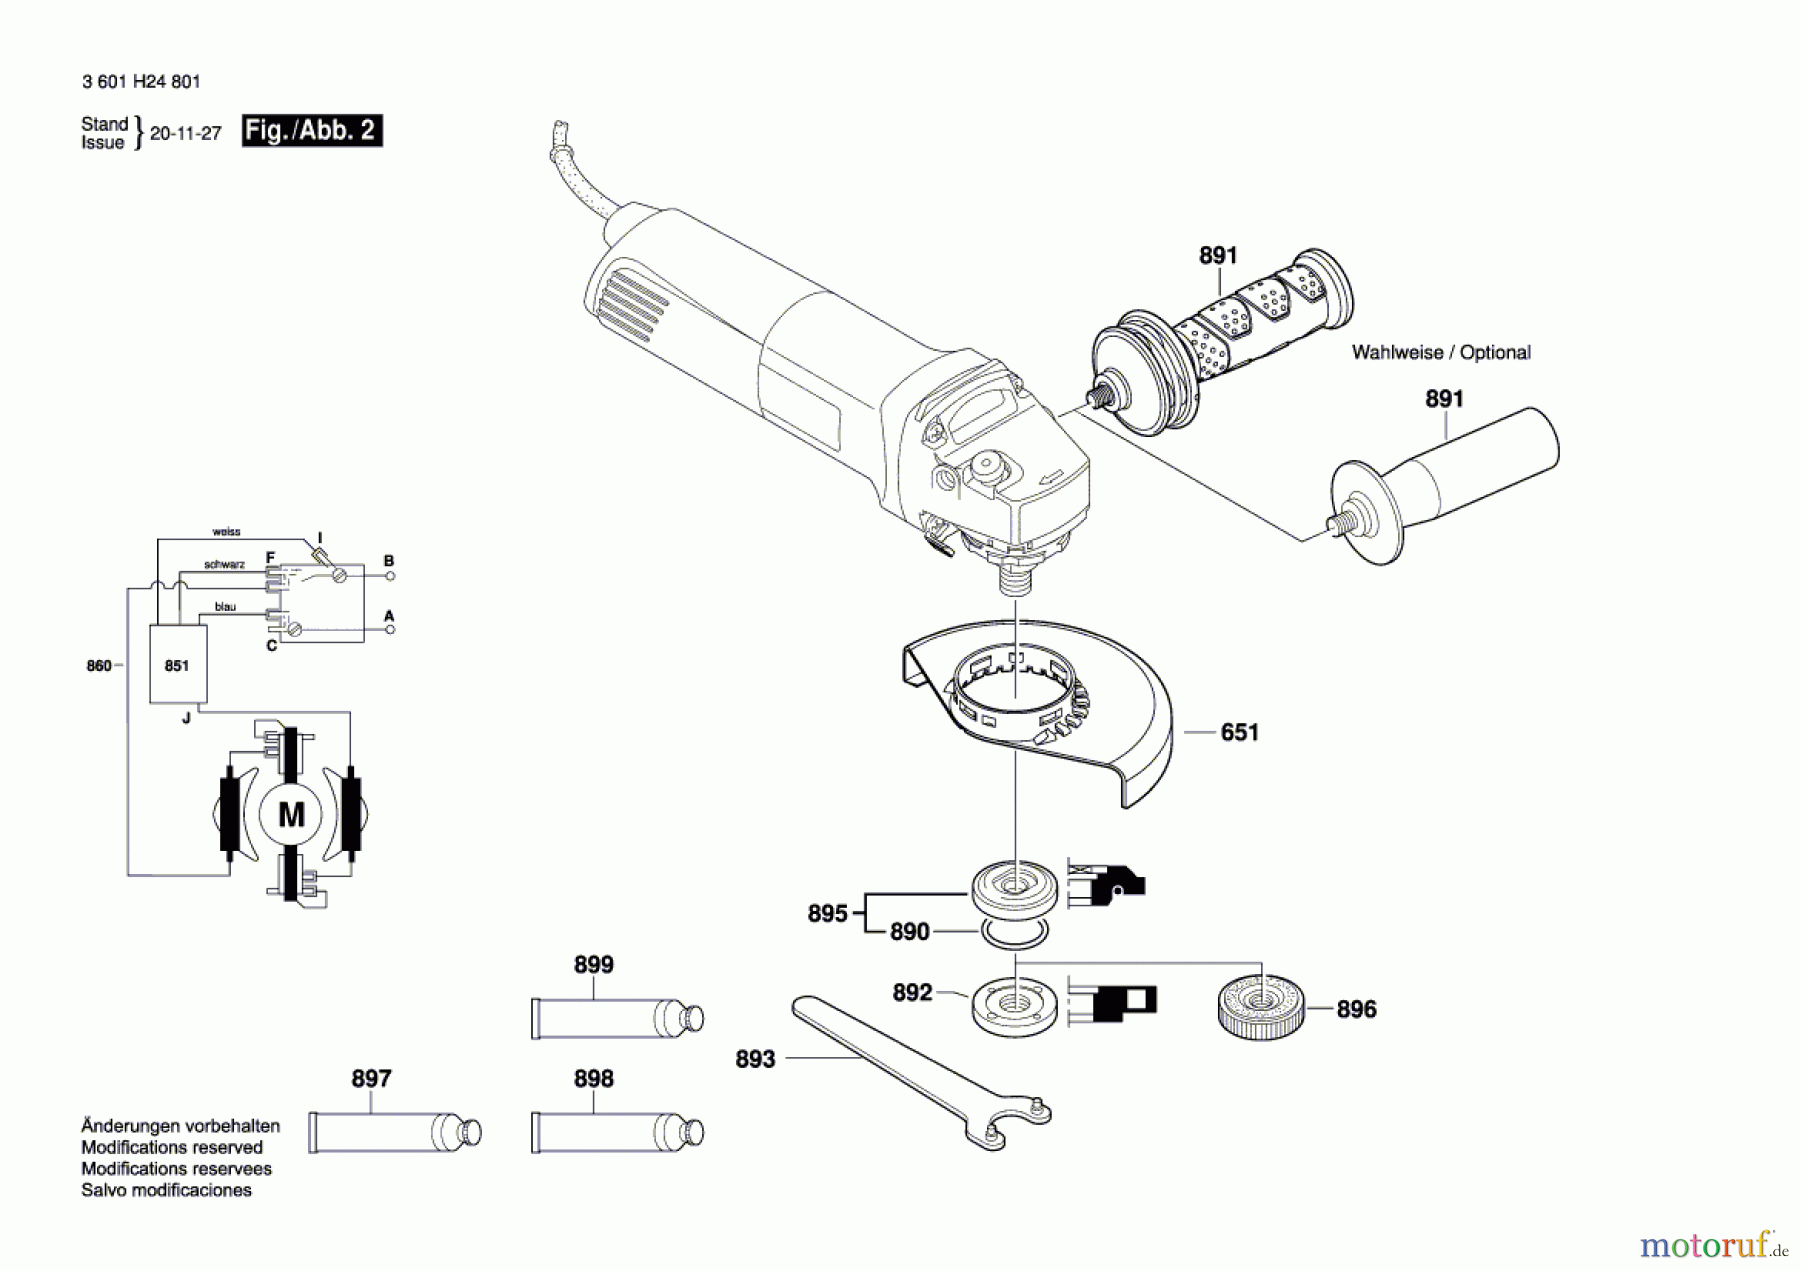  Bosch Werkzeug Winkelschleifer GWS 1400 Seite 2